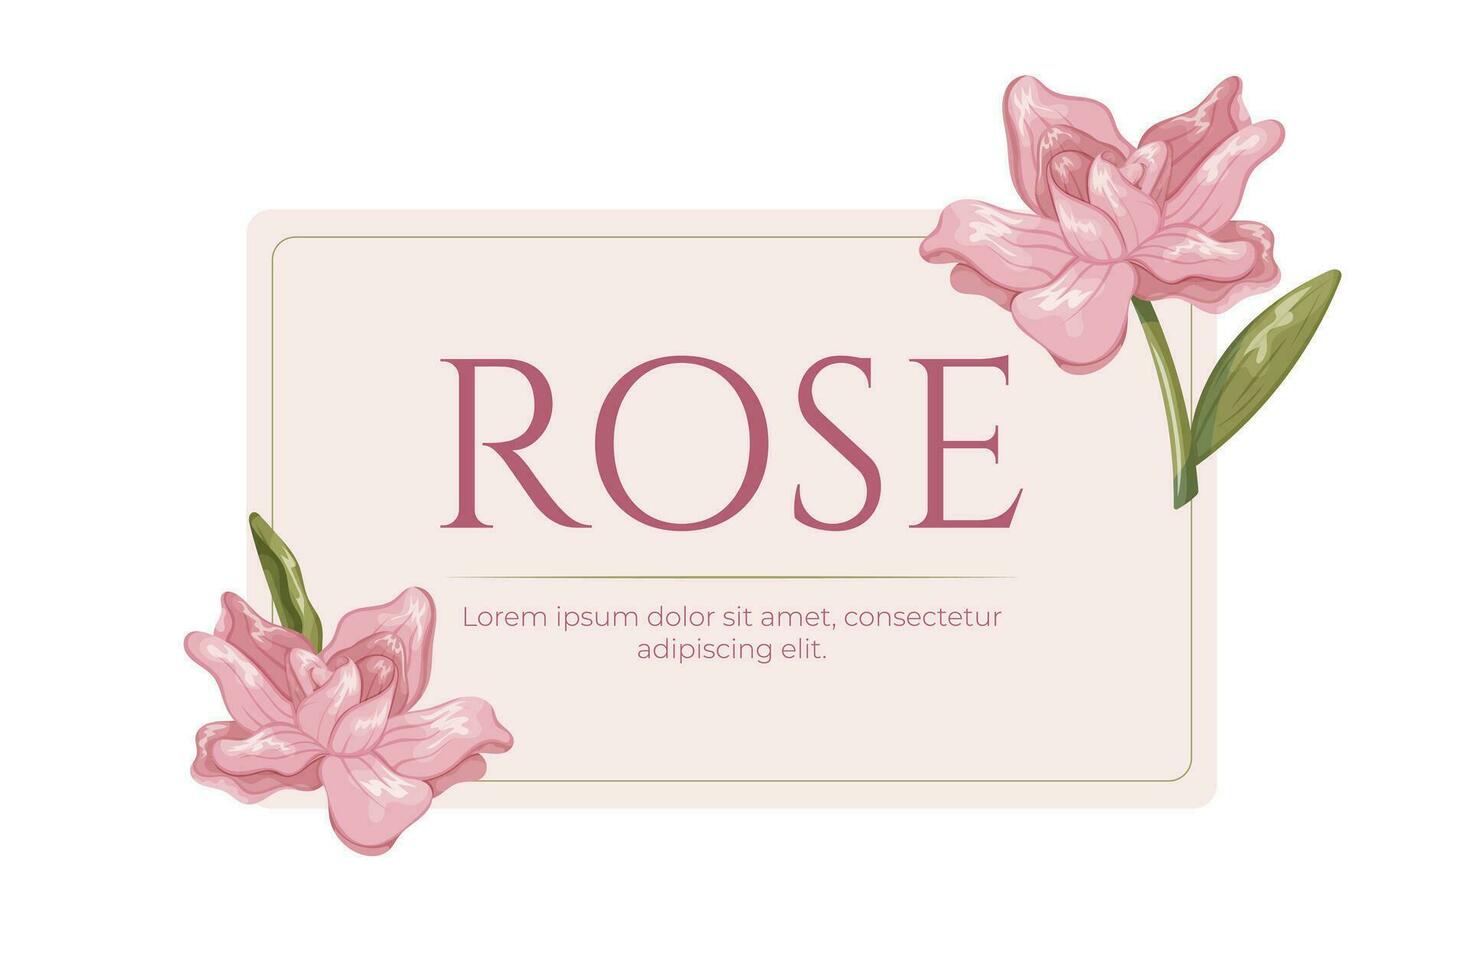 Decorative botanical label illustration. Floral arrangement, frame of pink cartoon rose flowers. Vector isolated Design element for packaging.